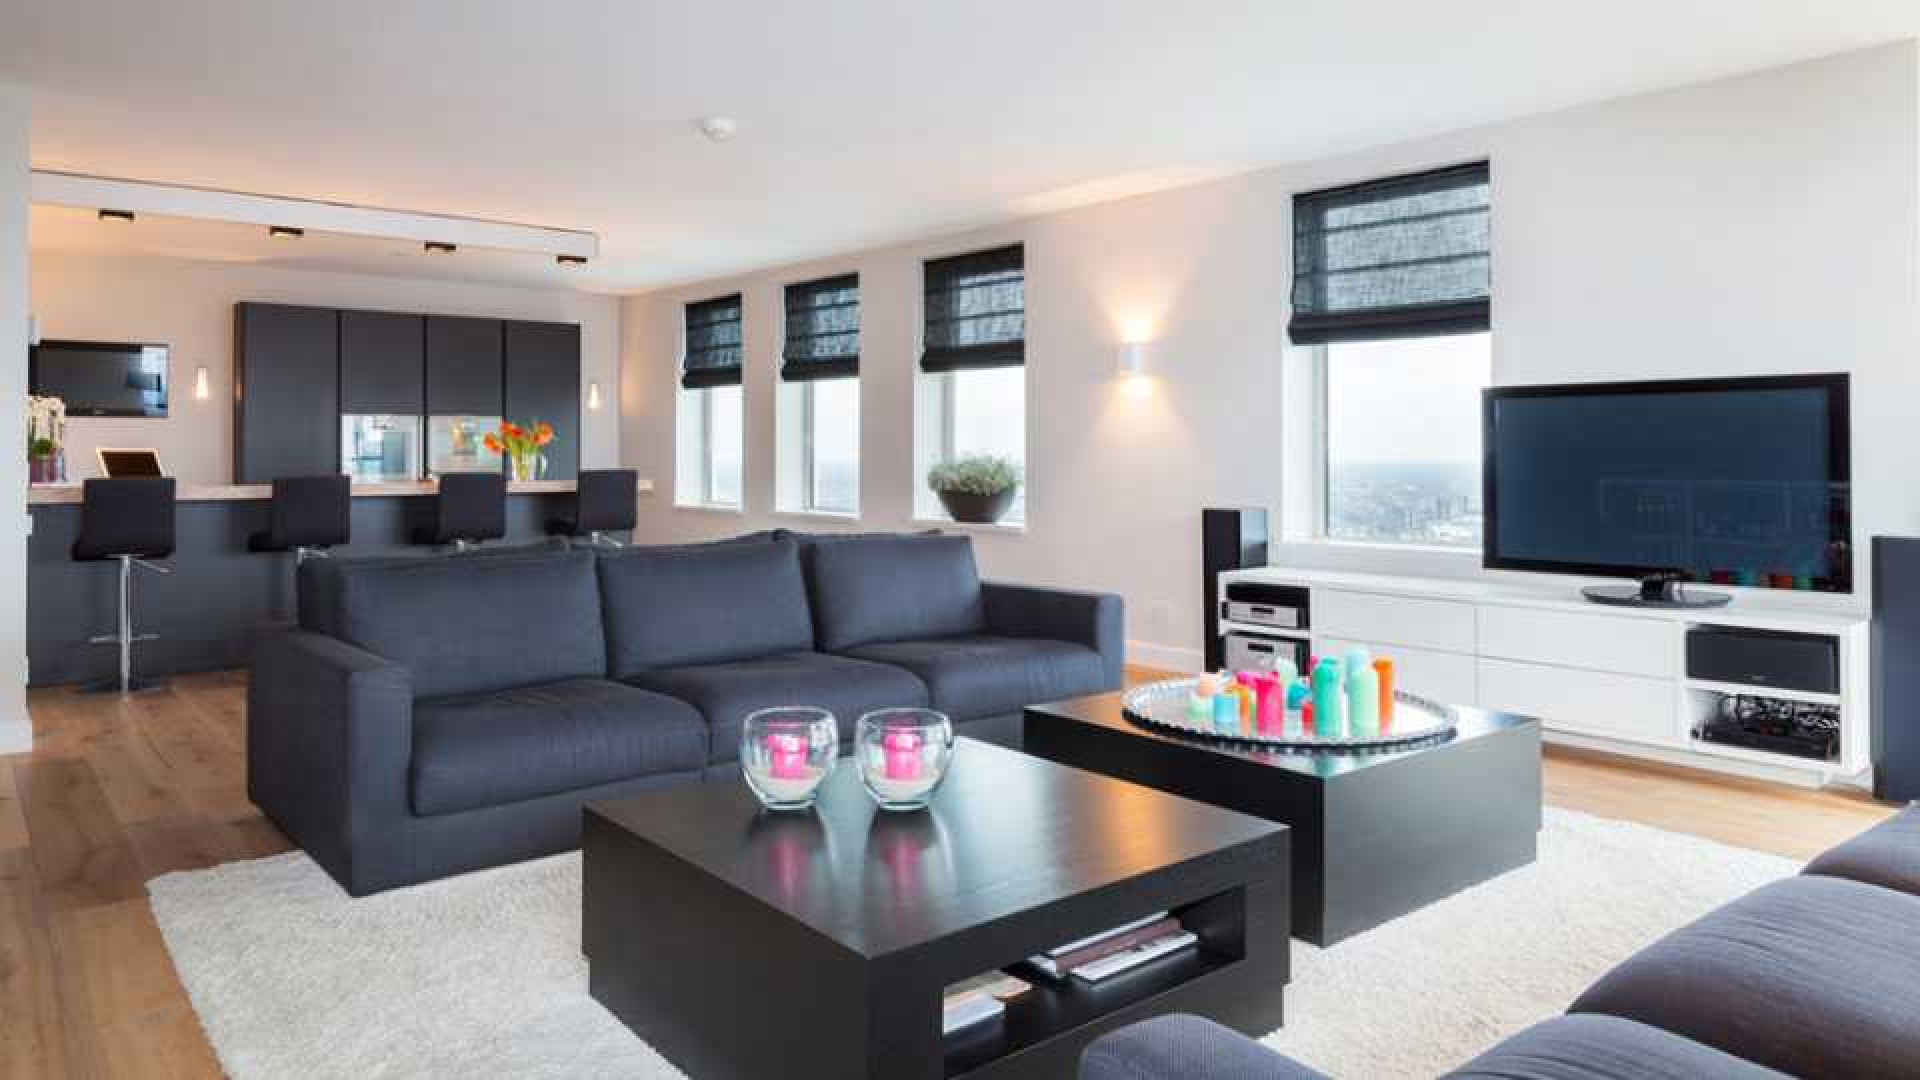 Amanda Krabbe en haar man Harrie Kolen zetten hun luxe penthouse in stille verkoop. Zie foto's 9